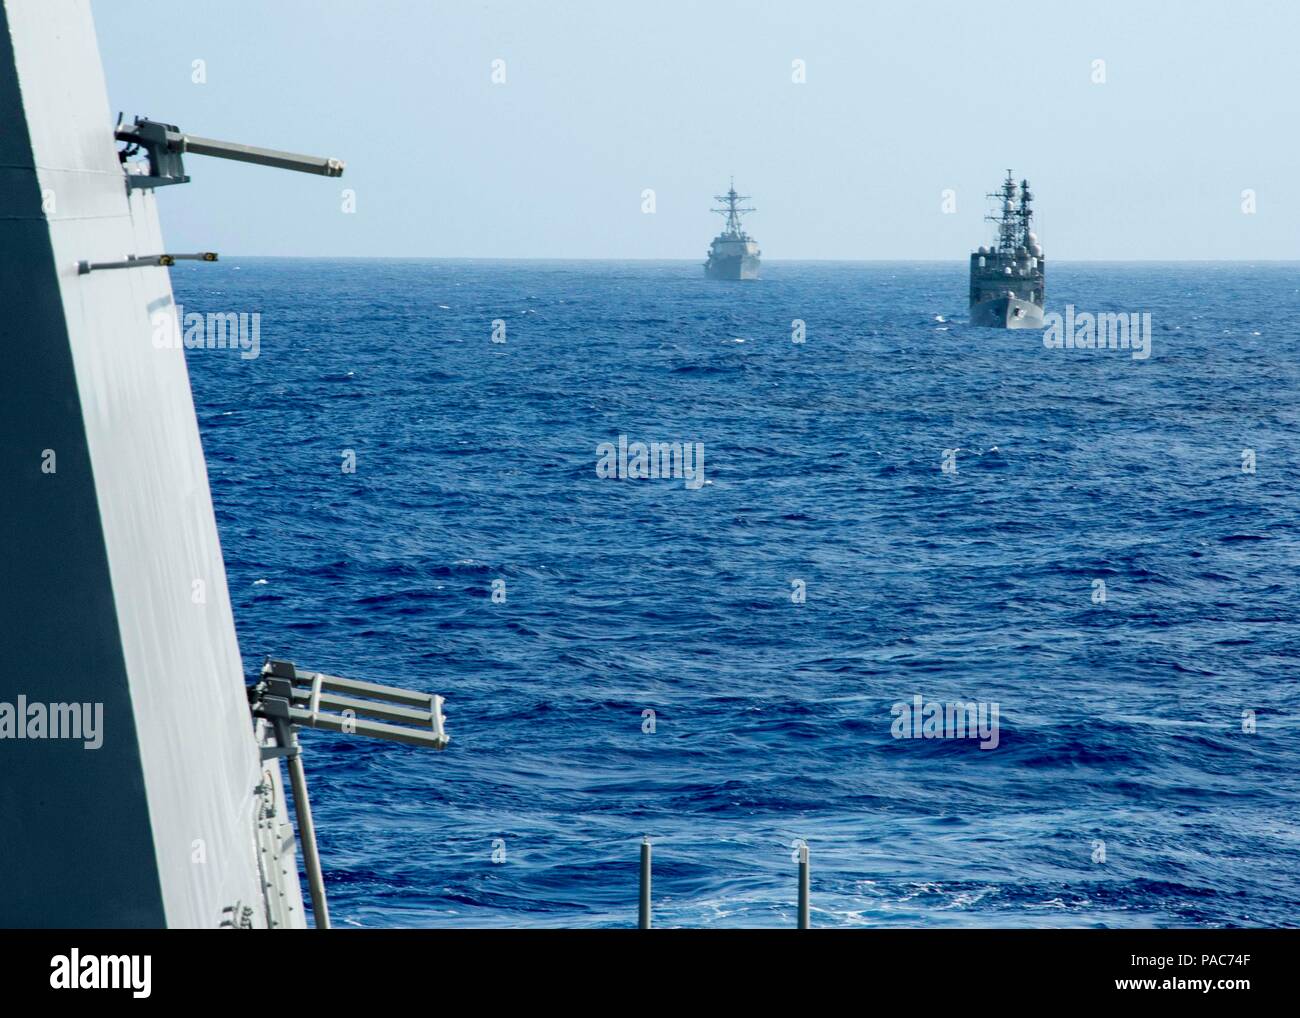 160308-N-GW 139-208 Gewässer in der Nähe von Guam (Mar. 8, 2016) - Japan Maritime Verteidigung-kraft (JMSDF) Schiff JS Amagiri (TT 154), Front und der Arleigh-burke-Klasse Lenkwaffen-zerstörer USS McCampbell (DDG85) Dampf hinter der Arleigh-Burke-Klasse Lenkwaffen-zerstörer USS Fitzgerald (DDG62) während der Multi Segeln 2016. Multi Segeln ist ein bilaterales Training an Interoperabilität zwischen den US-amerikanischen und japanischen Truppen. Diese Übung baut die Interoperabilität und die Vorteile von realistischen, gemeinsames Training, unsere Fähigkeit zur Zusammenarbeit jede Kontingenz zu konfrontieren. (U.S. Marine Foto von Masse Communic Stockfoto